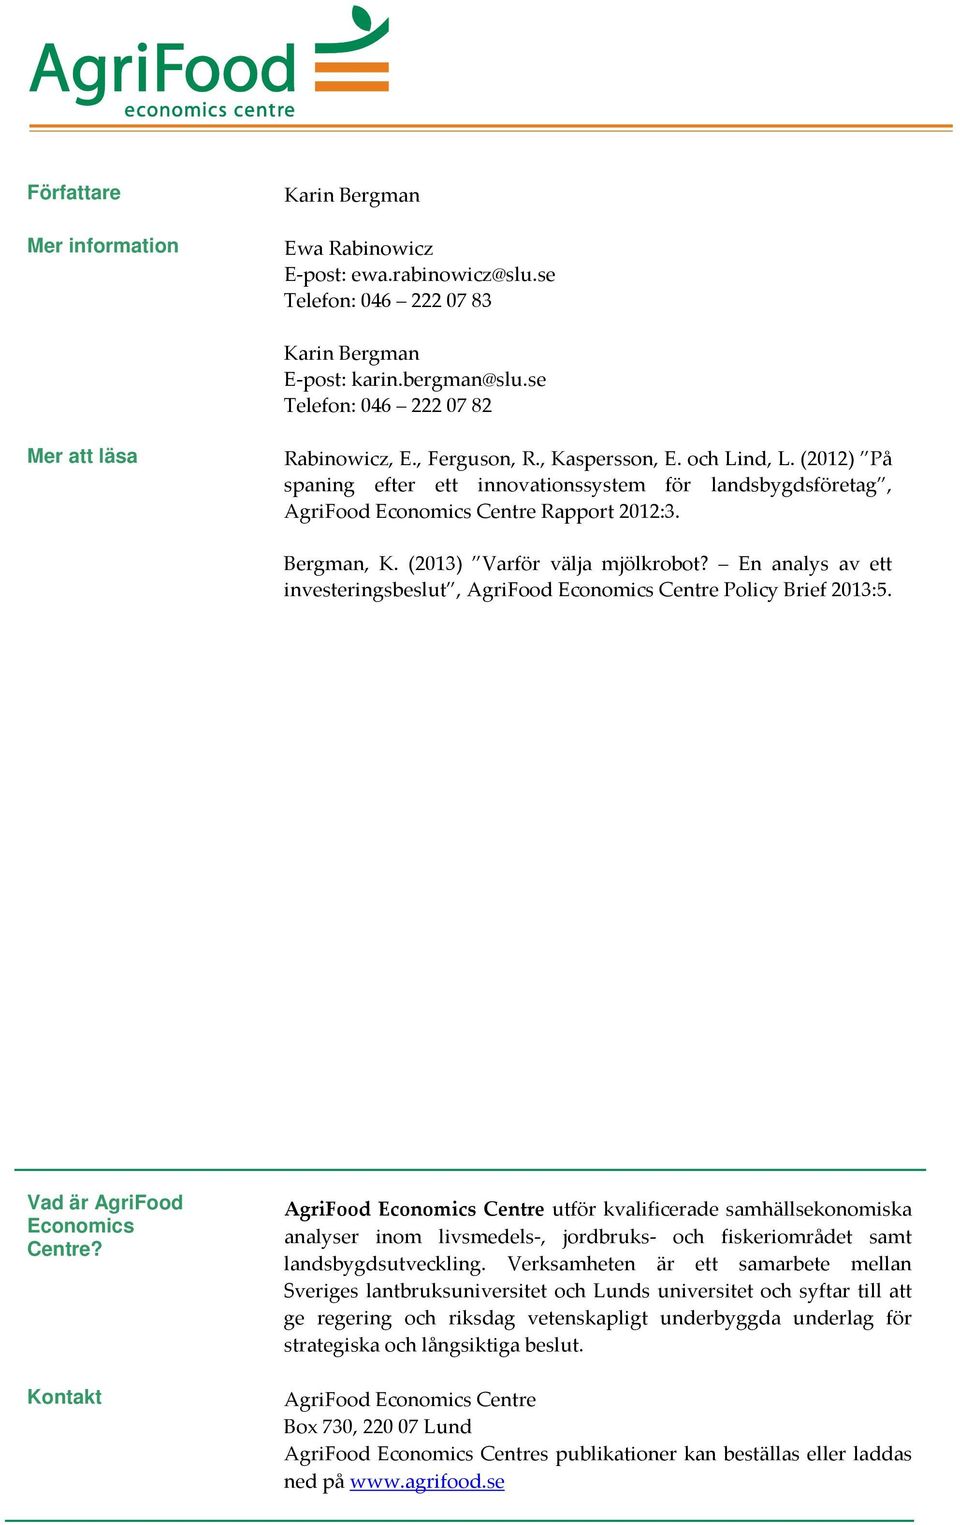 (2012) På spaning efter ett innovationssystem för landsbygdsföretag, AgriFood Economics Centre Rapport 2012:3. Bergman, K. (2013) Varför välja mjölkrobot?